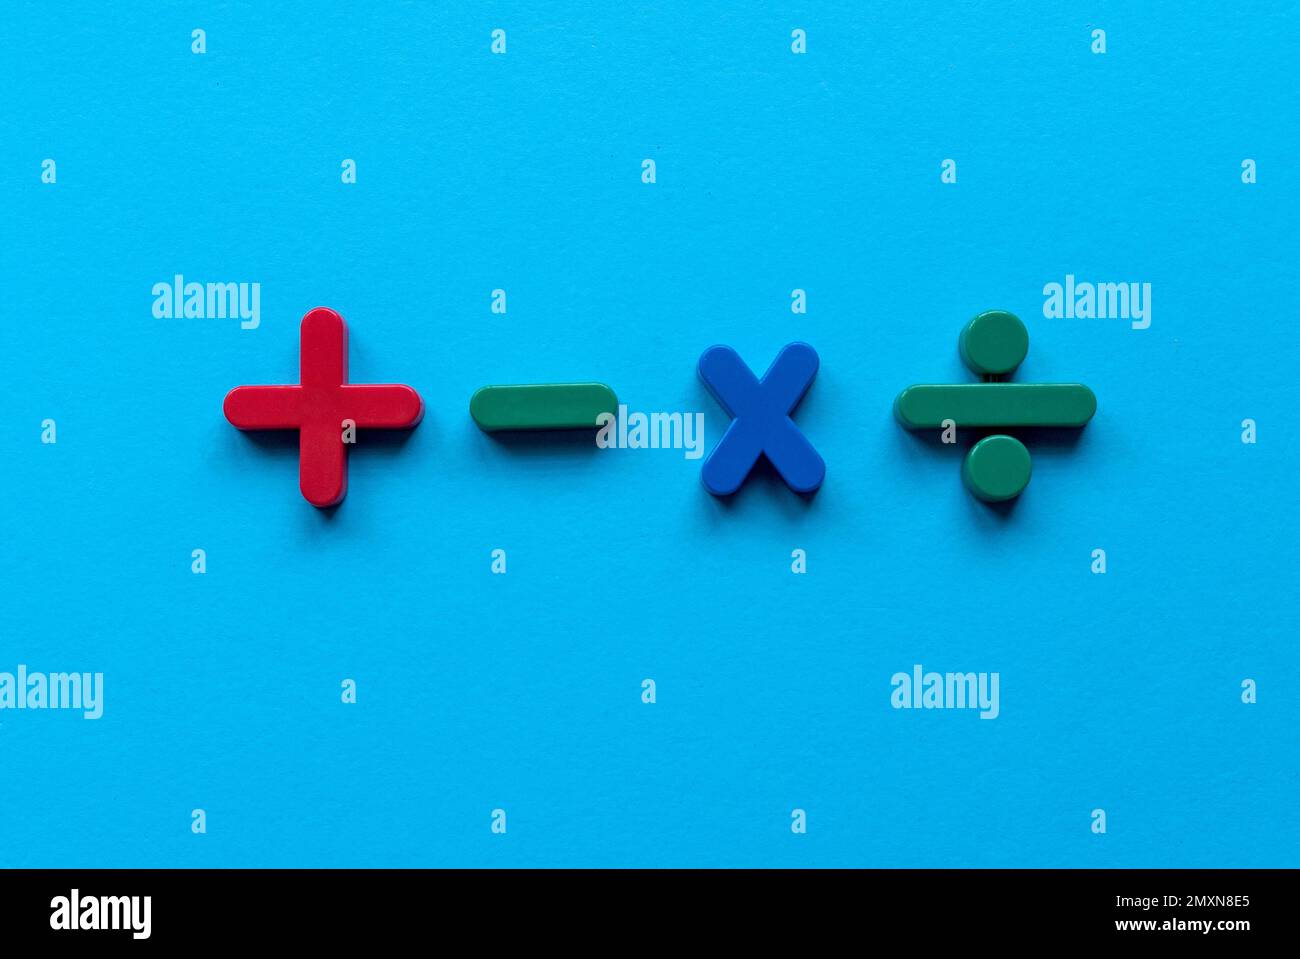 Farbige mathematische Form (Plus, Minus, Multiplizieren, Teilen) auf blauem Hintergrund. Stockfoto